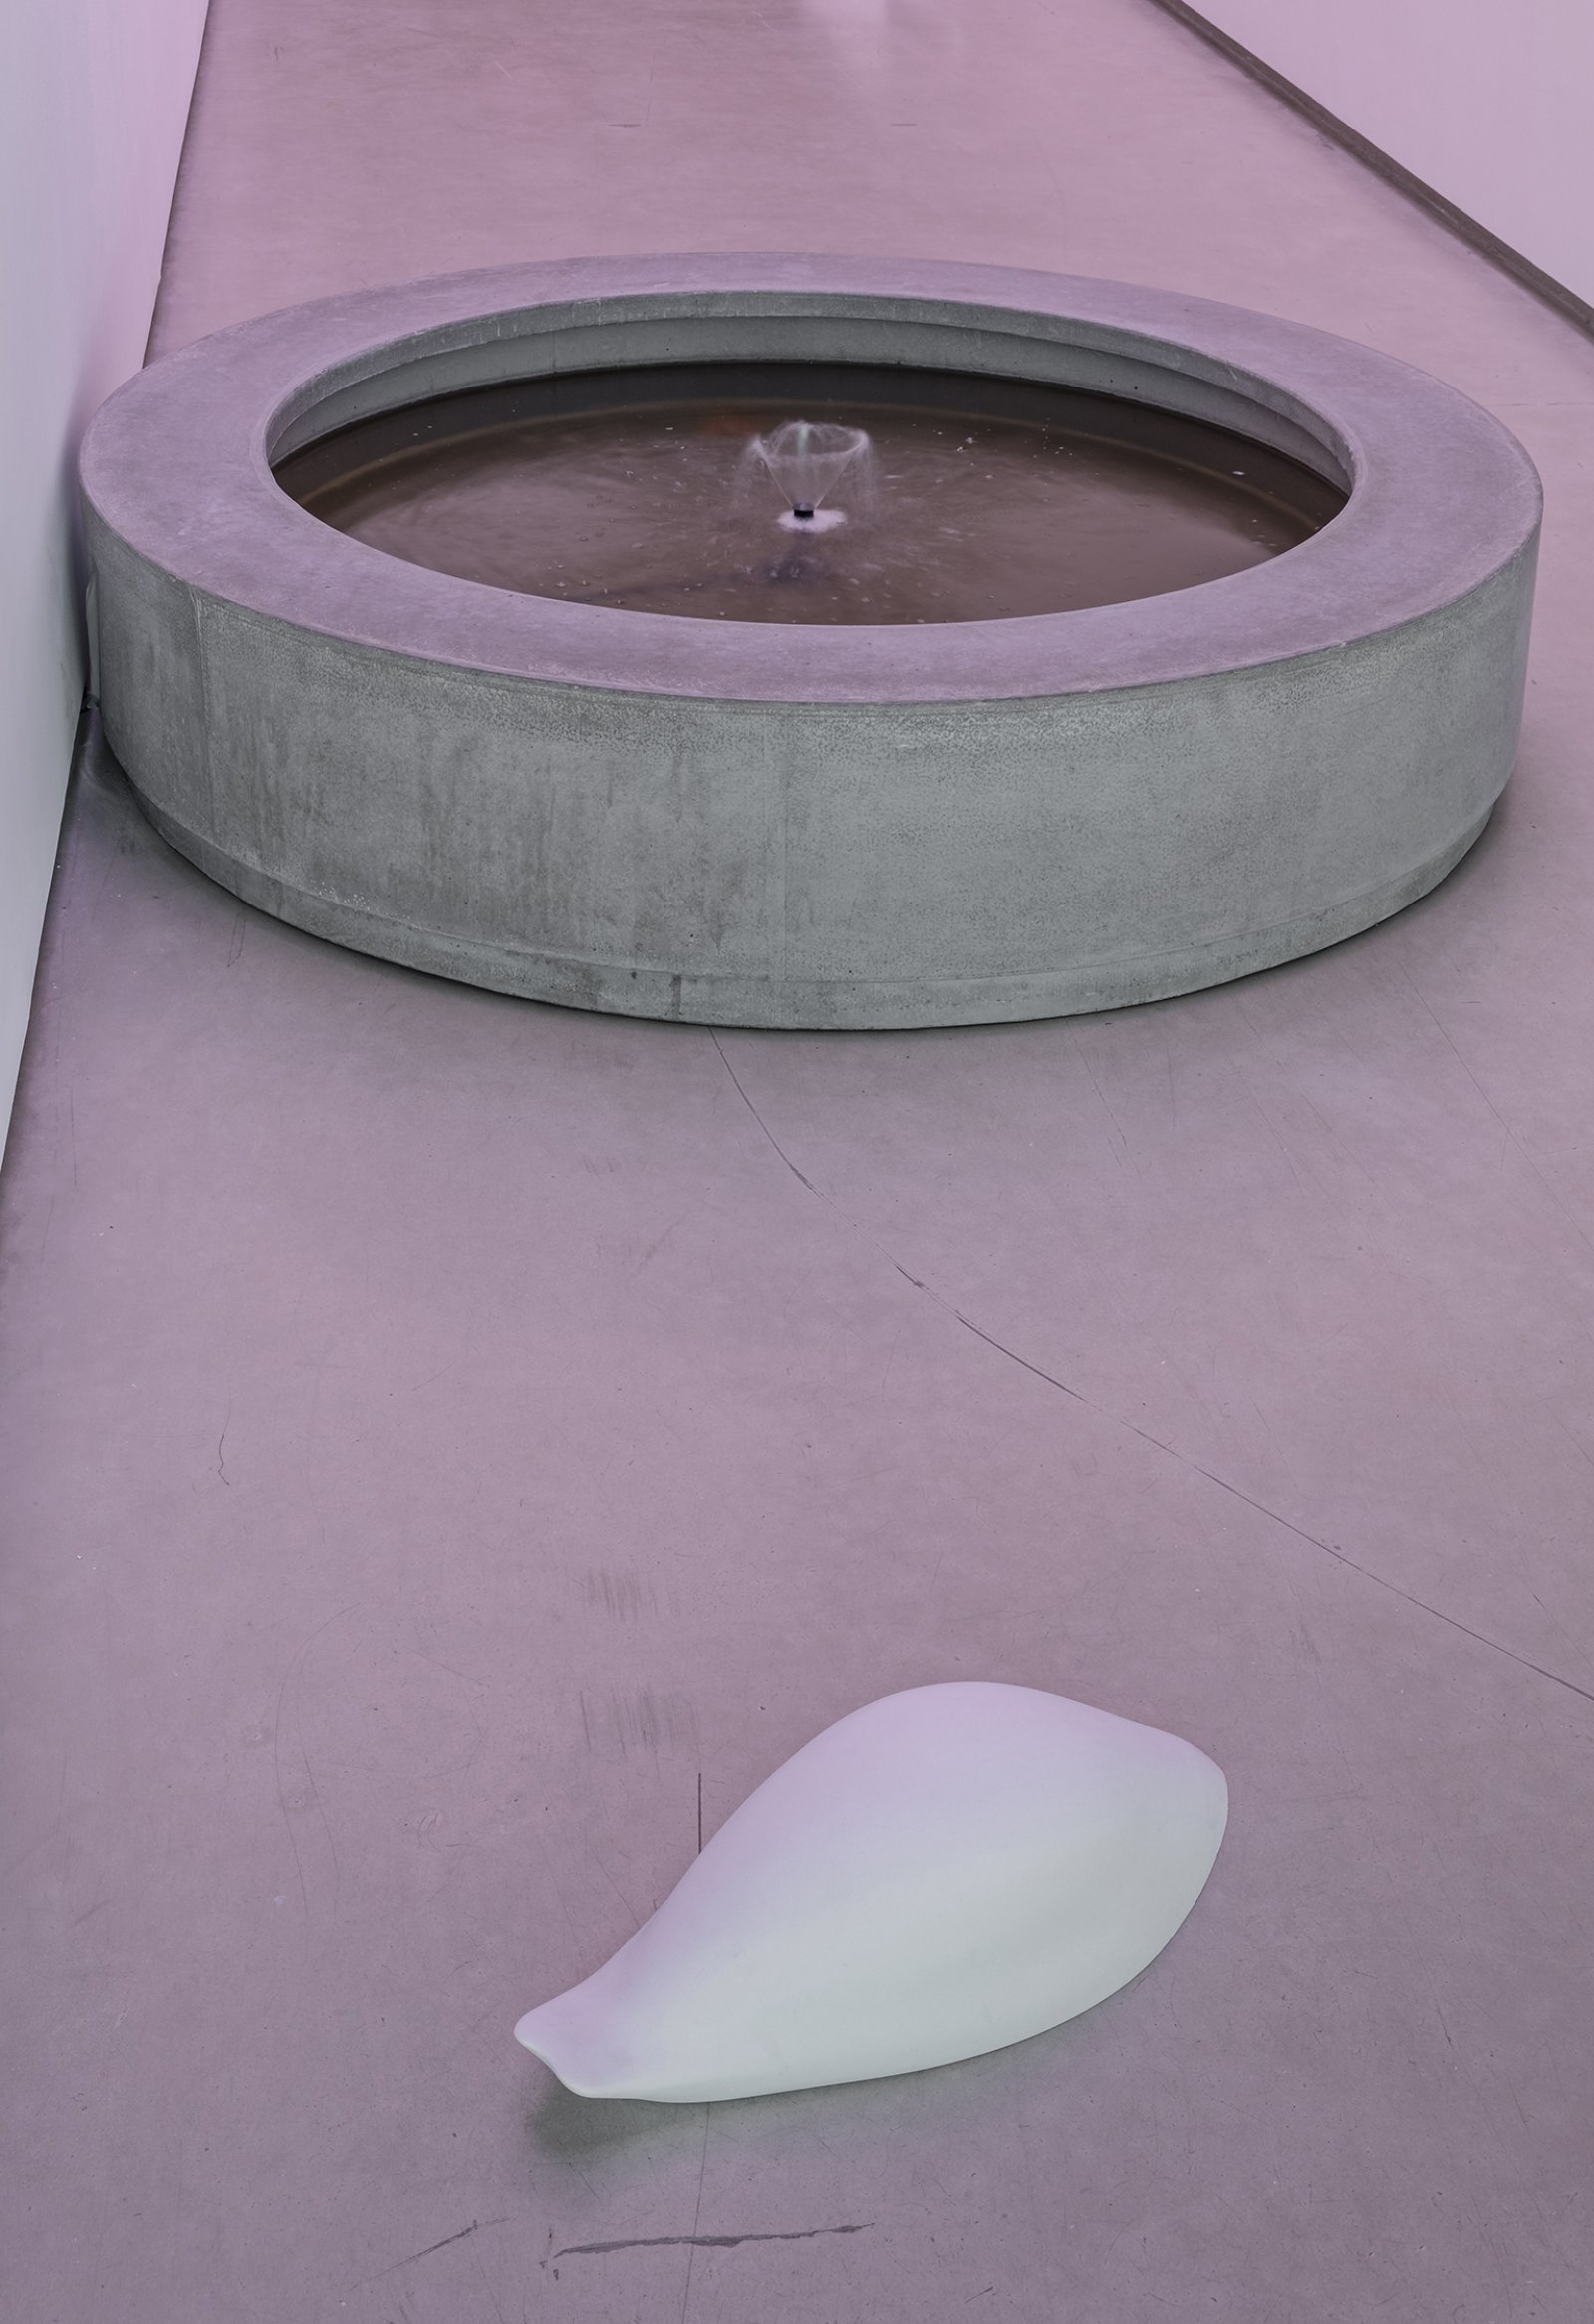 Abbas Akhavan, variations on a landscape, 2018, coloured transparencies, styrofoam, cast concrete, pump, water, estrogen, paper towel dispenser, paper towel, dimensions variable. Installation view, The Power Plant, Toronto, 2018